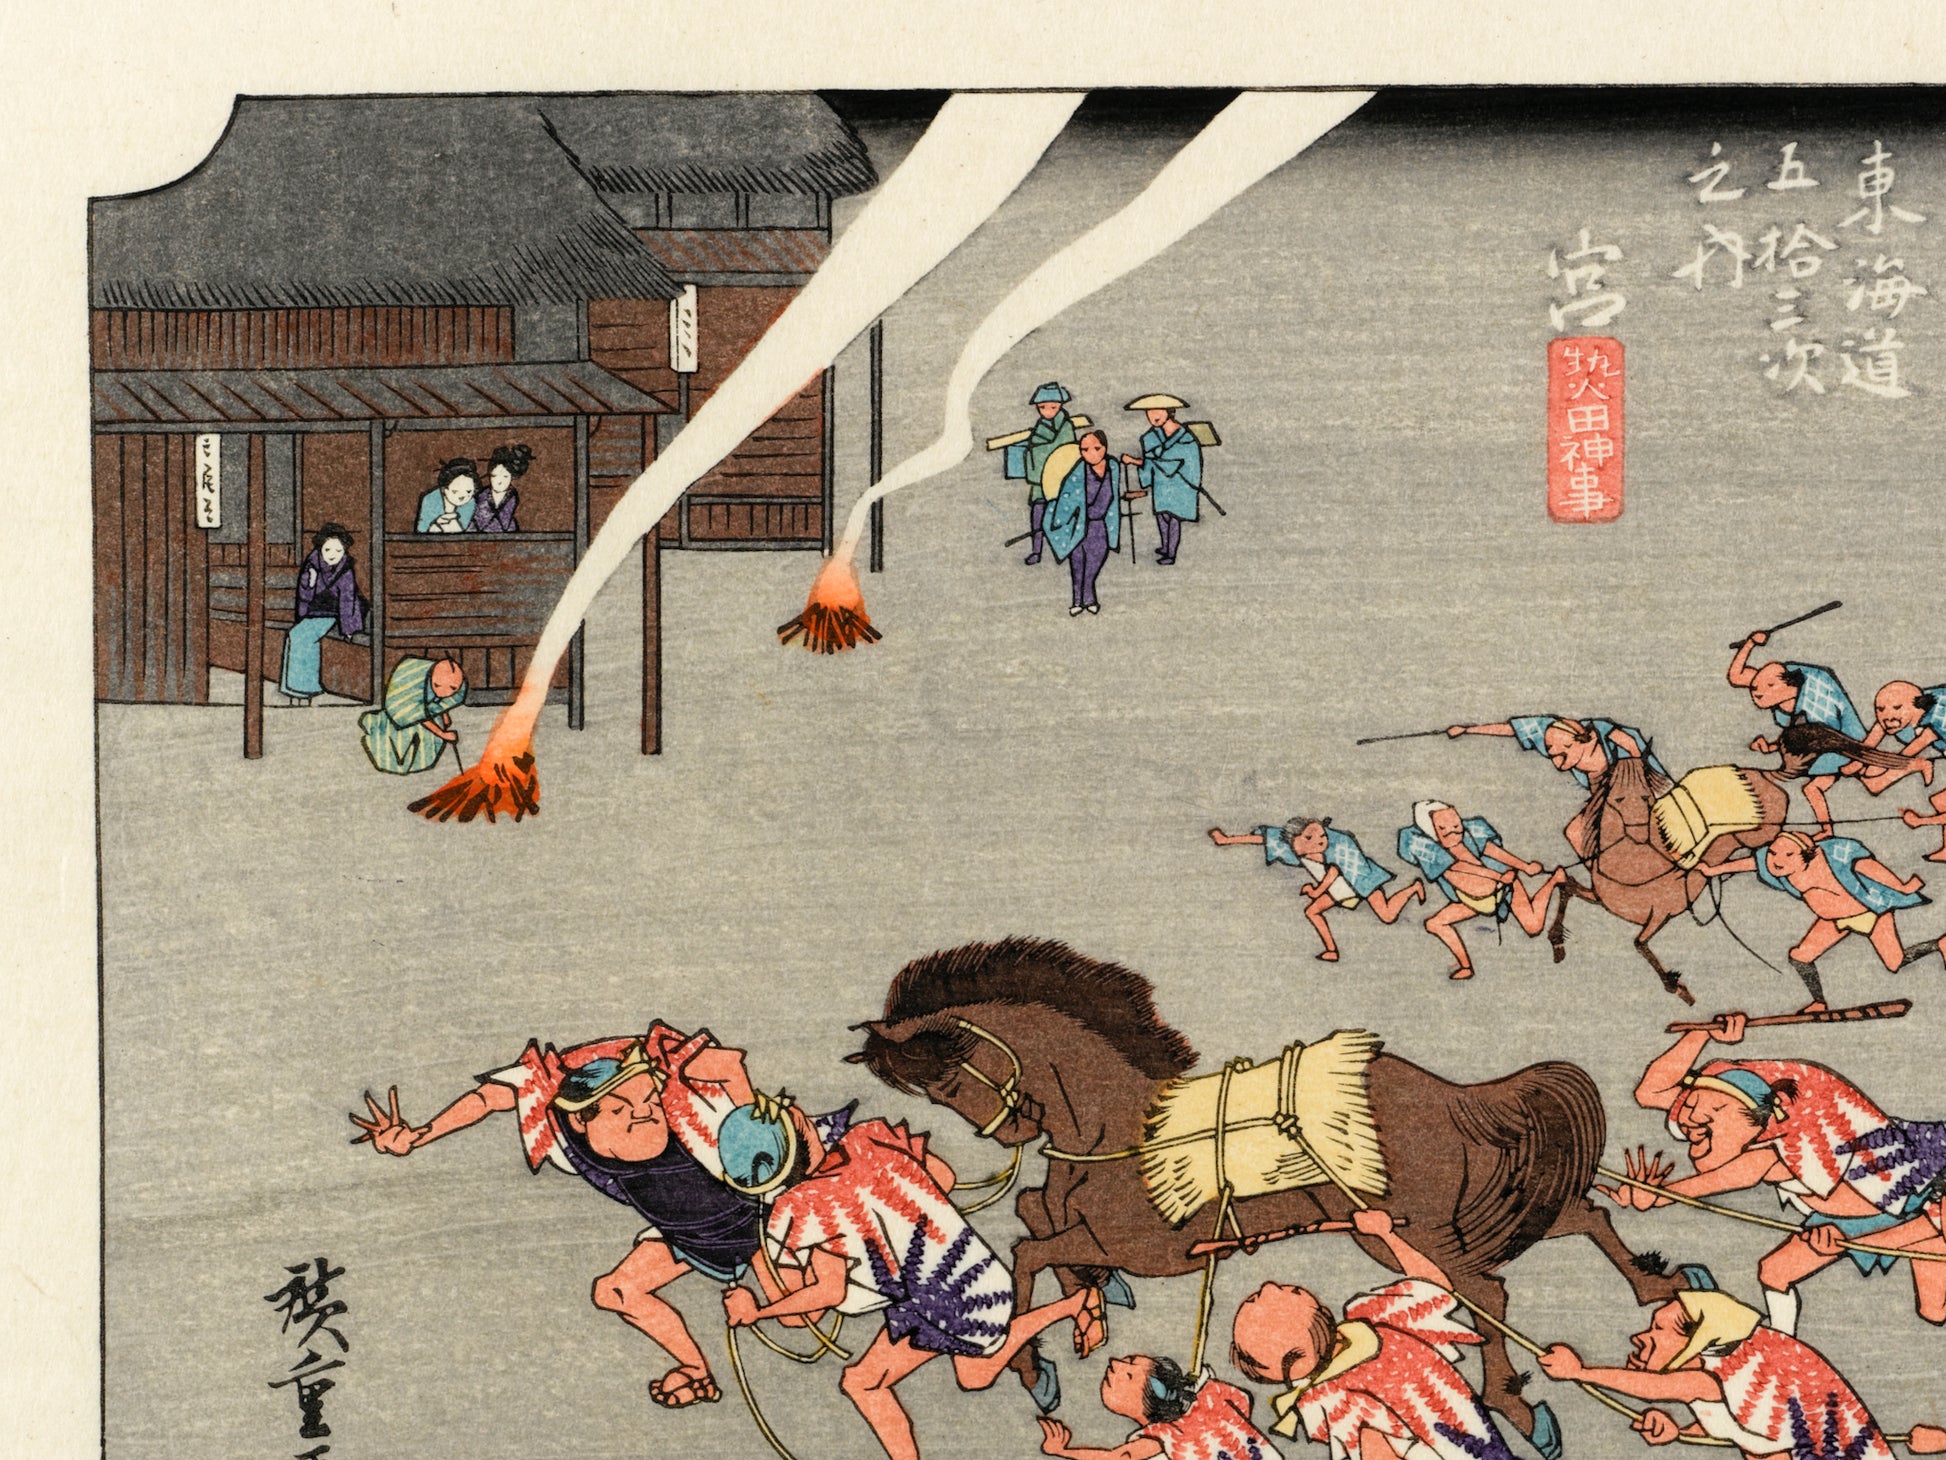 estampe japonaise course chevaux avec tori en premier plan, quart haut gauche de l'estampe, des feux allumés